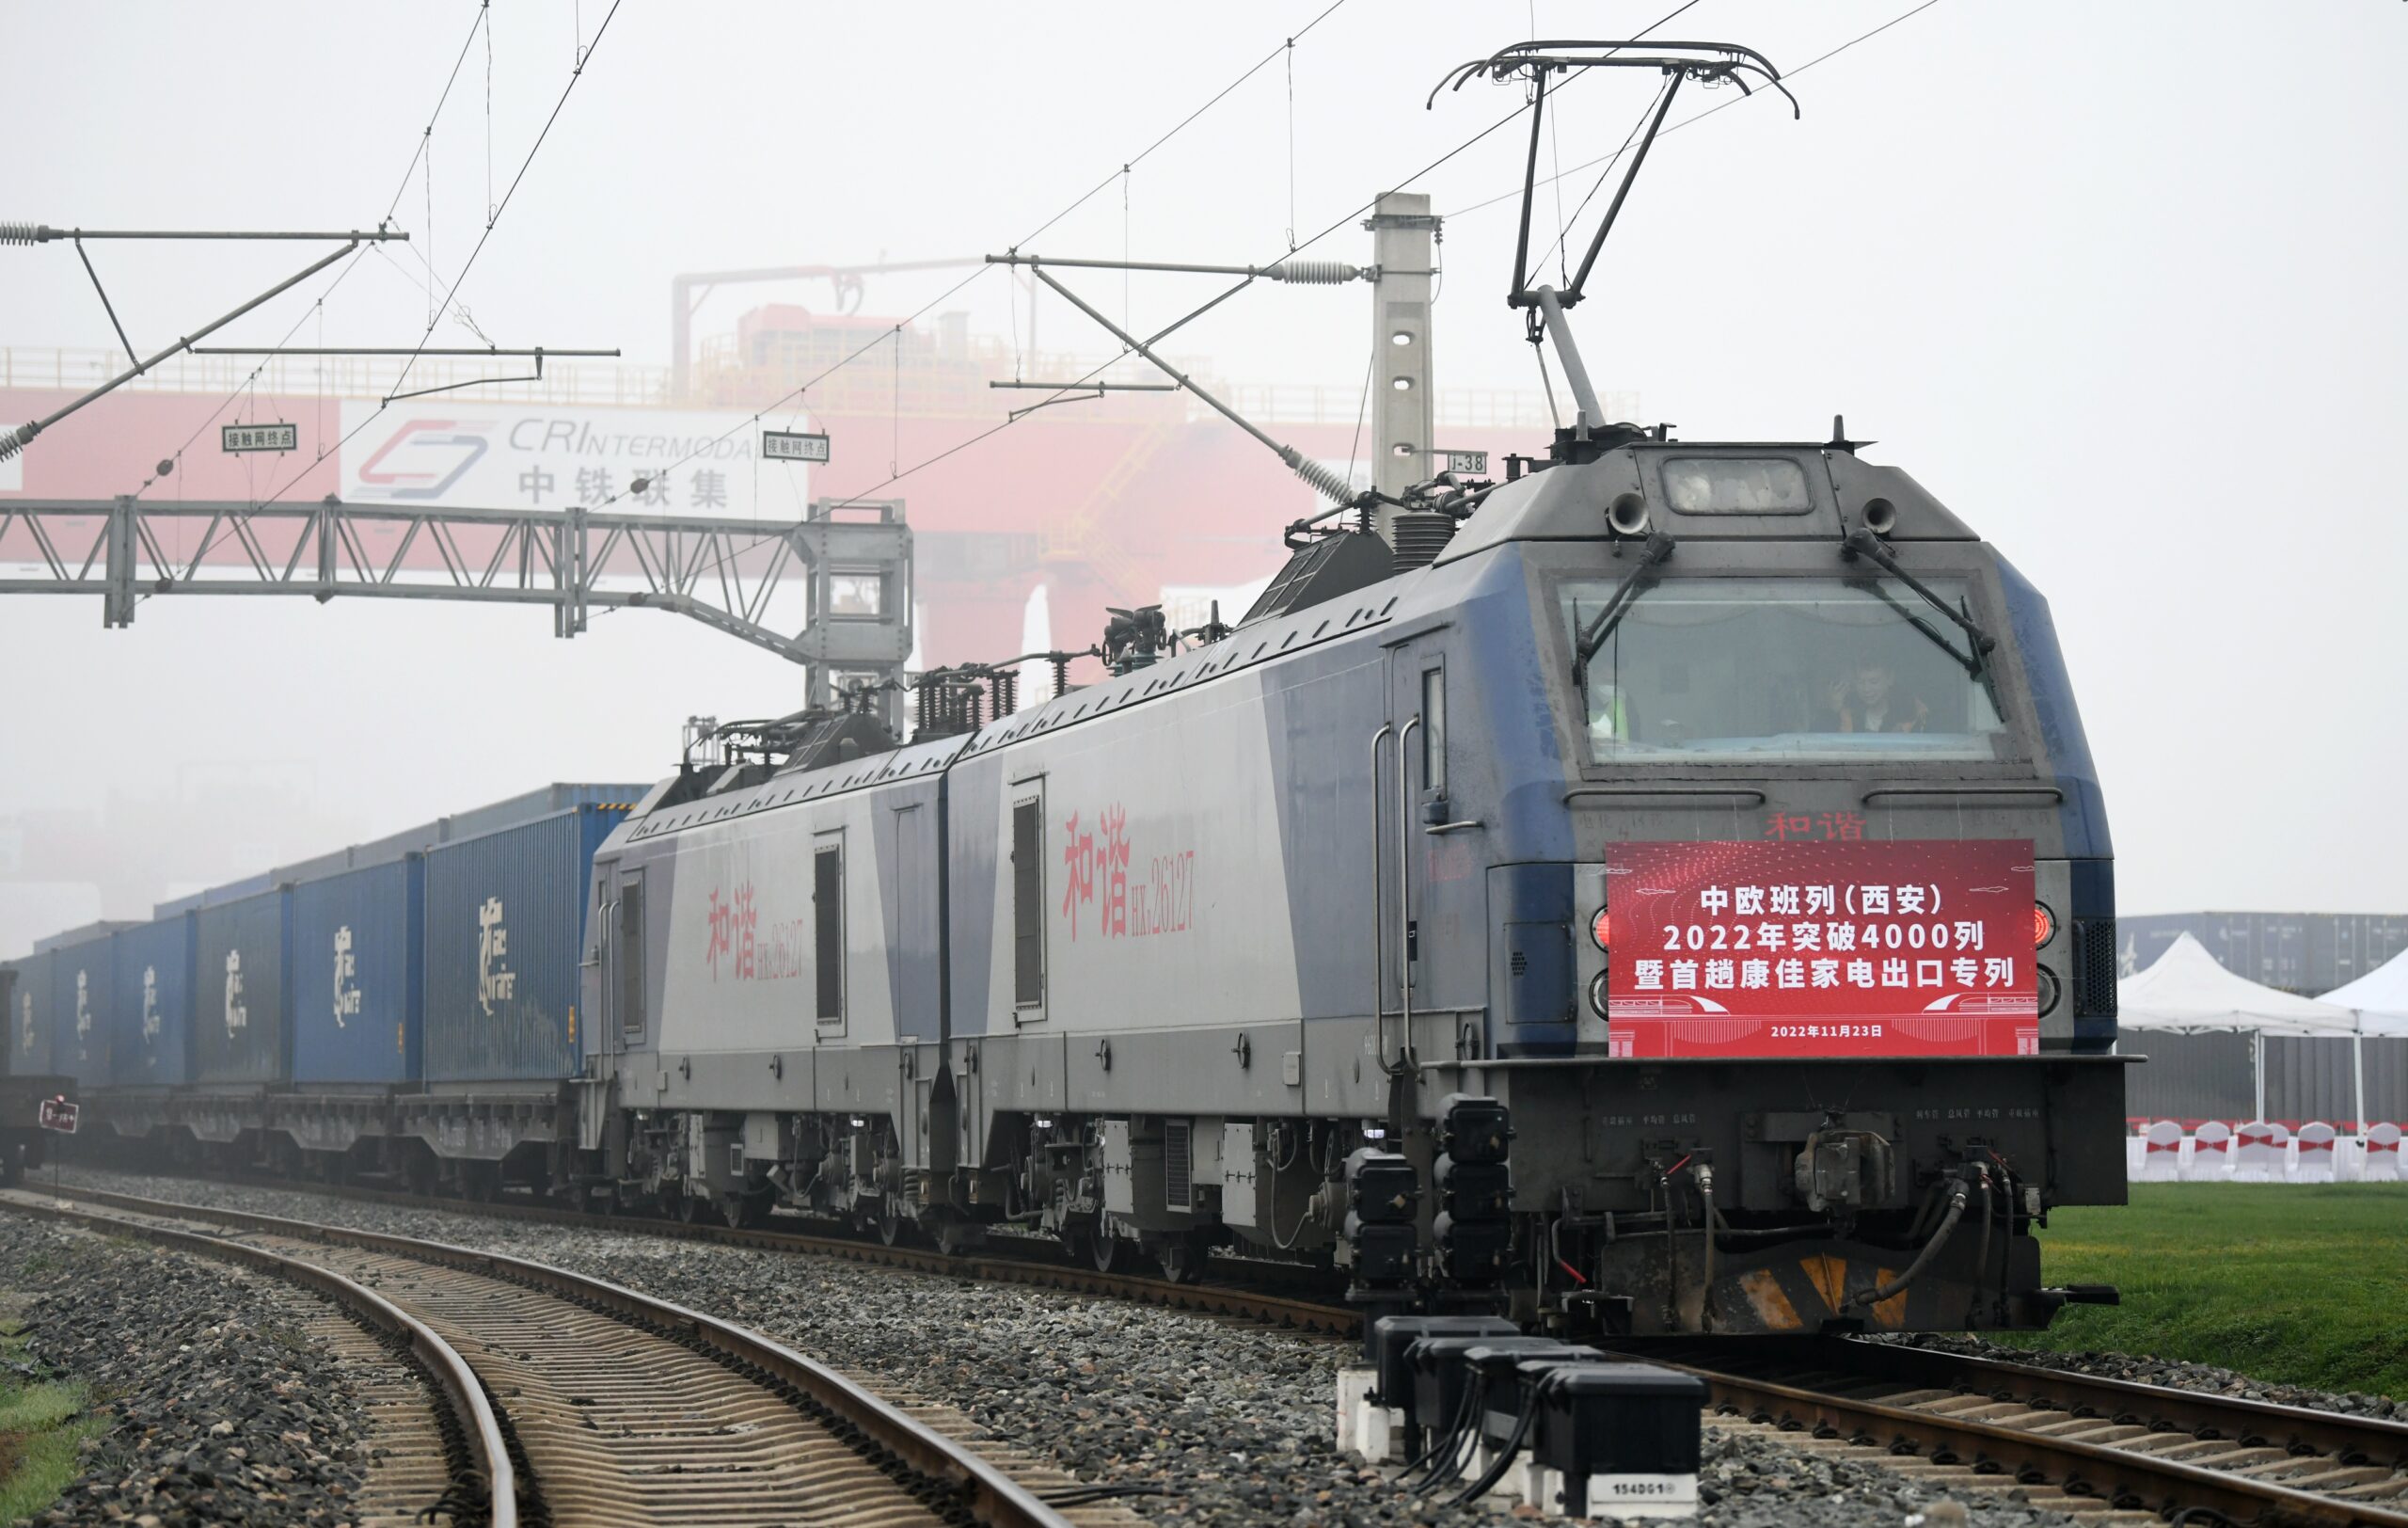 ส่านซีบริการ 'รถไฟสินค้าจีน-ยุโรป' ขบวนที่ 4,000 ของปี